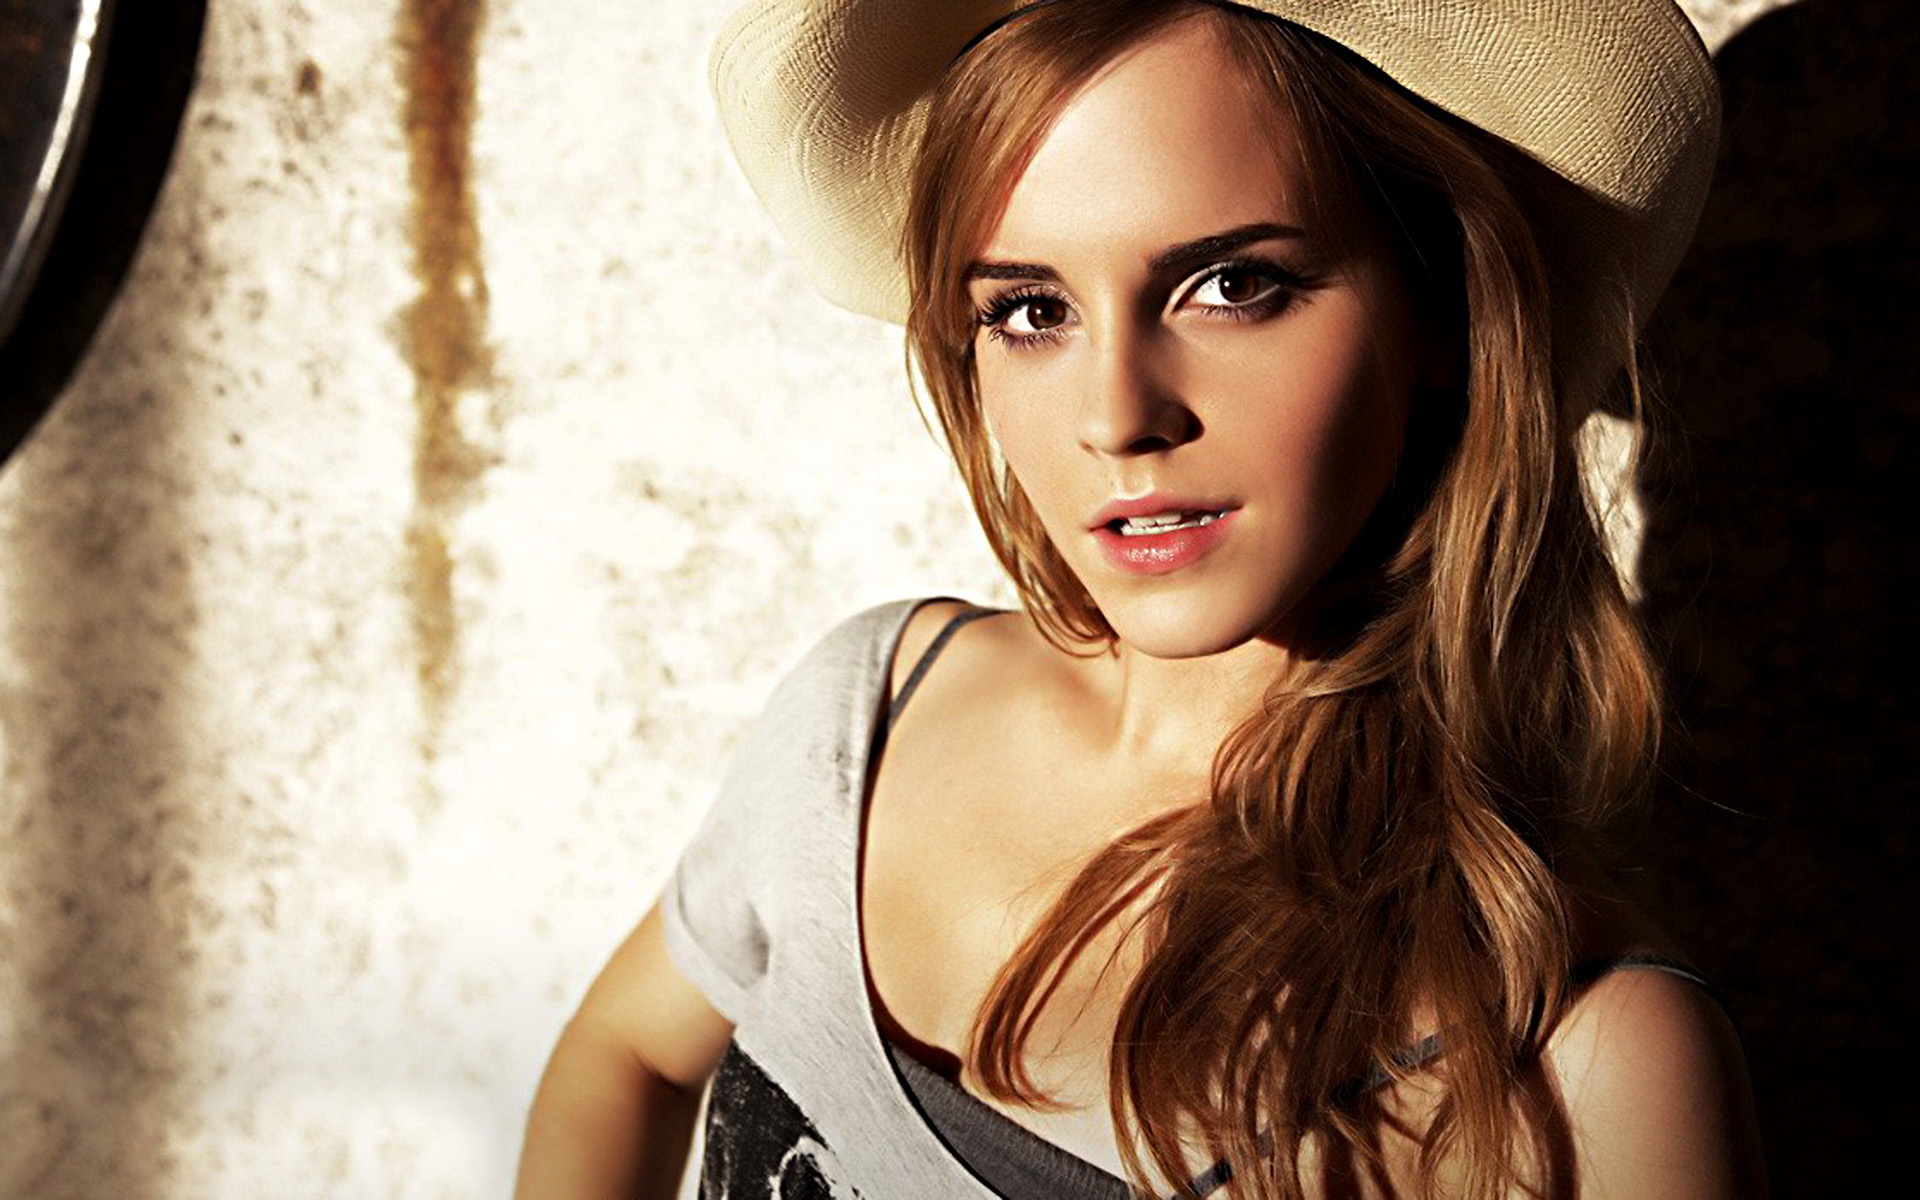 Fondos De Pantalla De Emma Watson Fondosmil